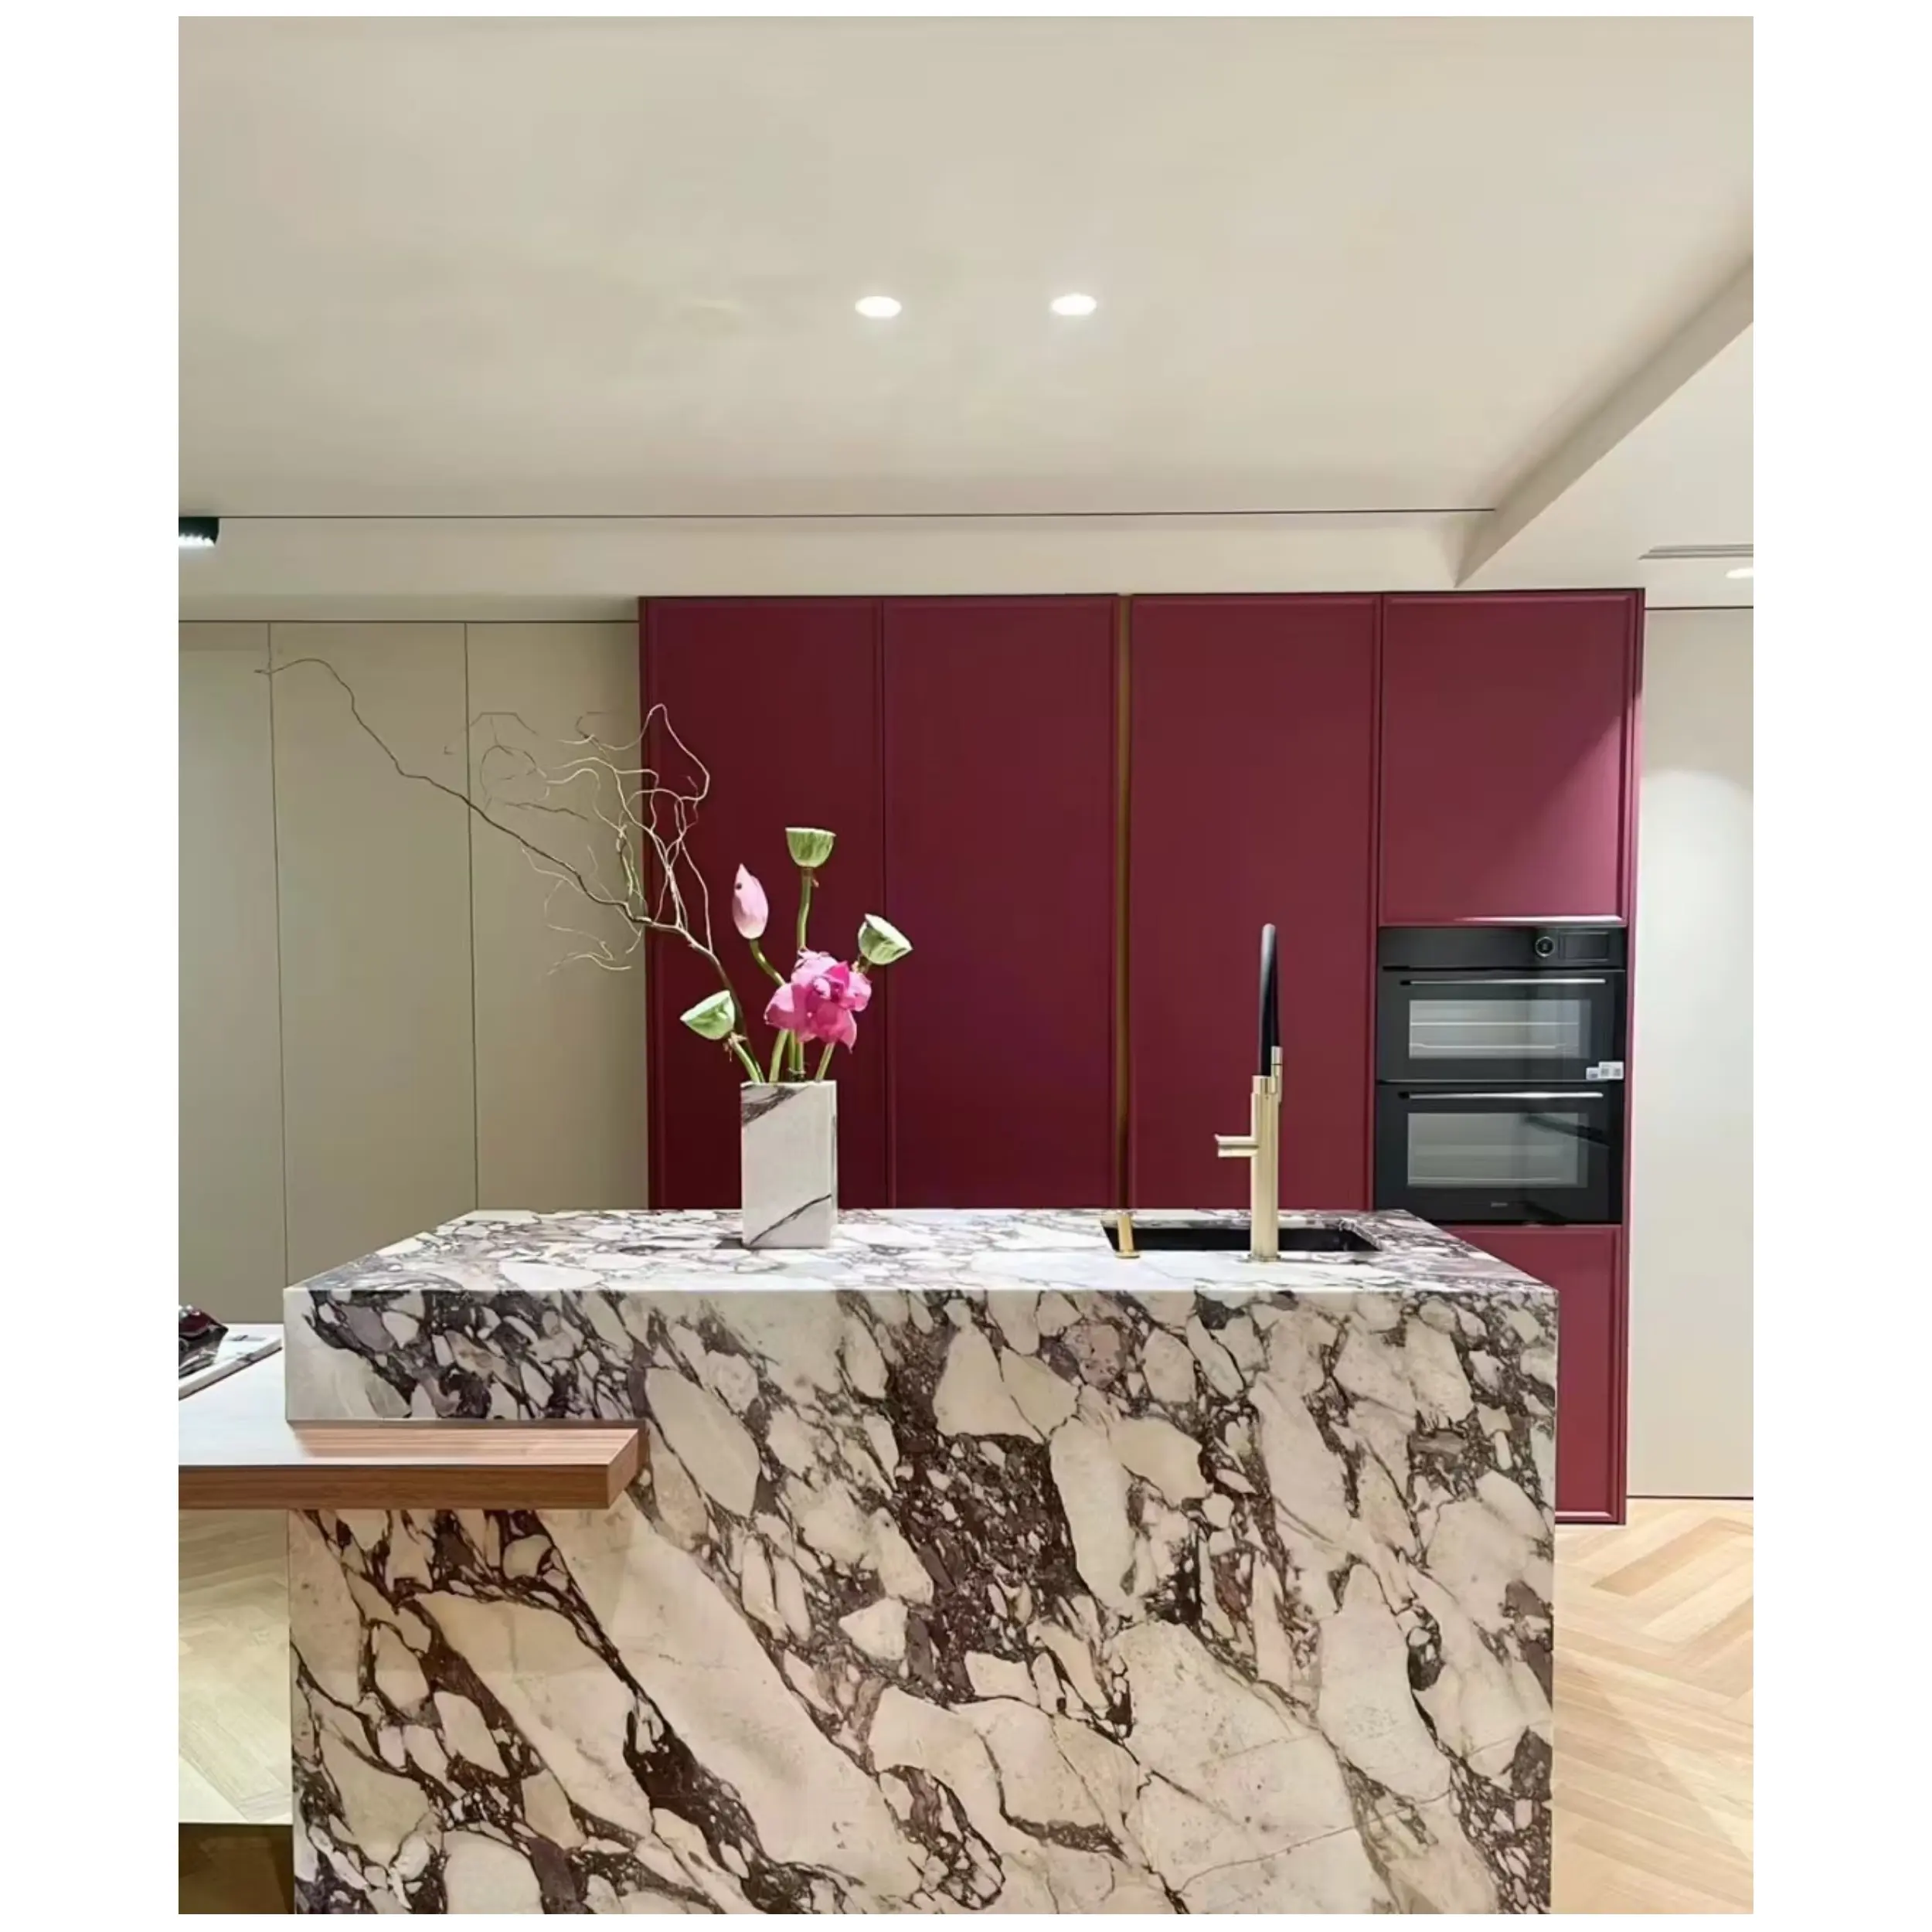 Calacatta Viola Quartzit polierter Naturstein modernes Badezimmer Küche Arbeitsplatten Inselplatten individualisierbare Wandverkleidung